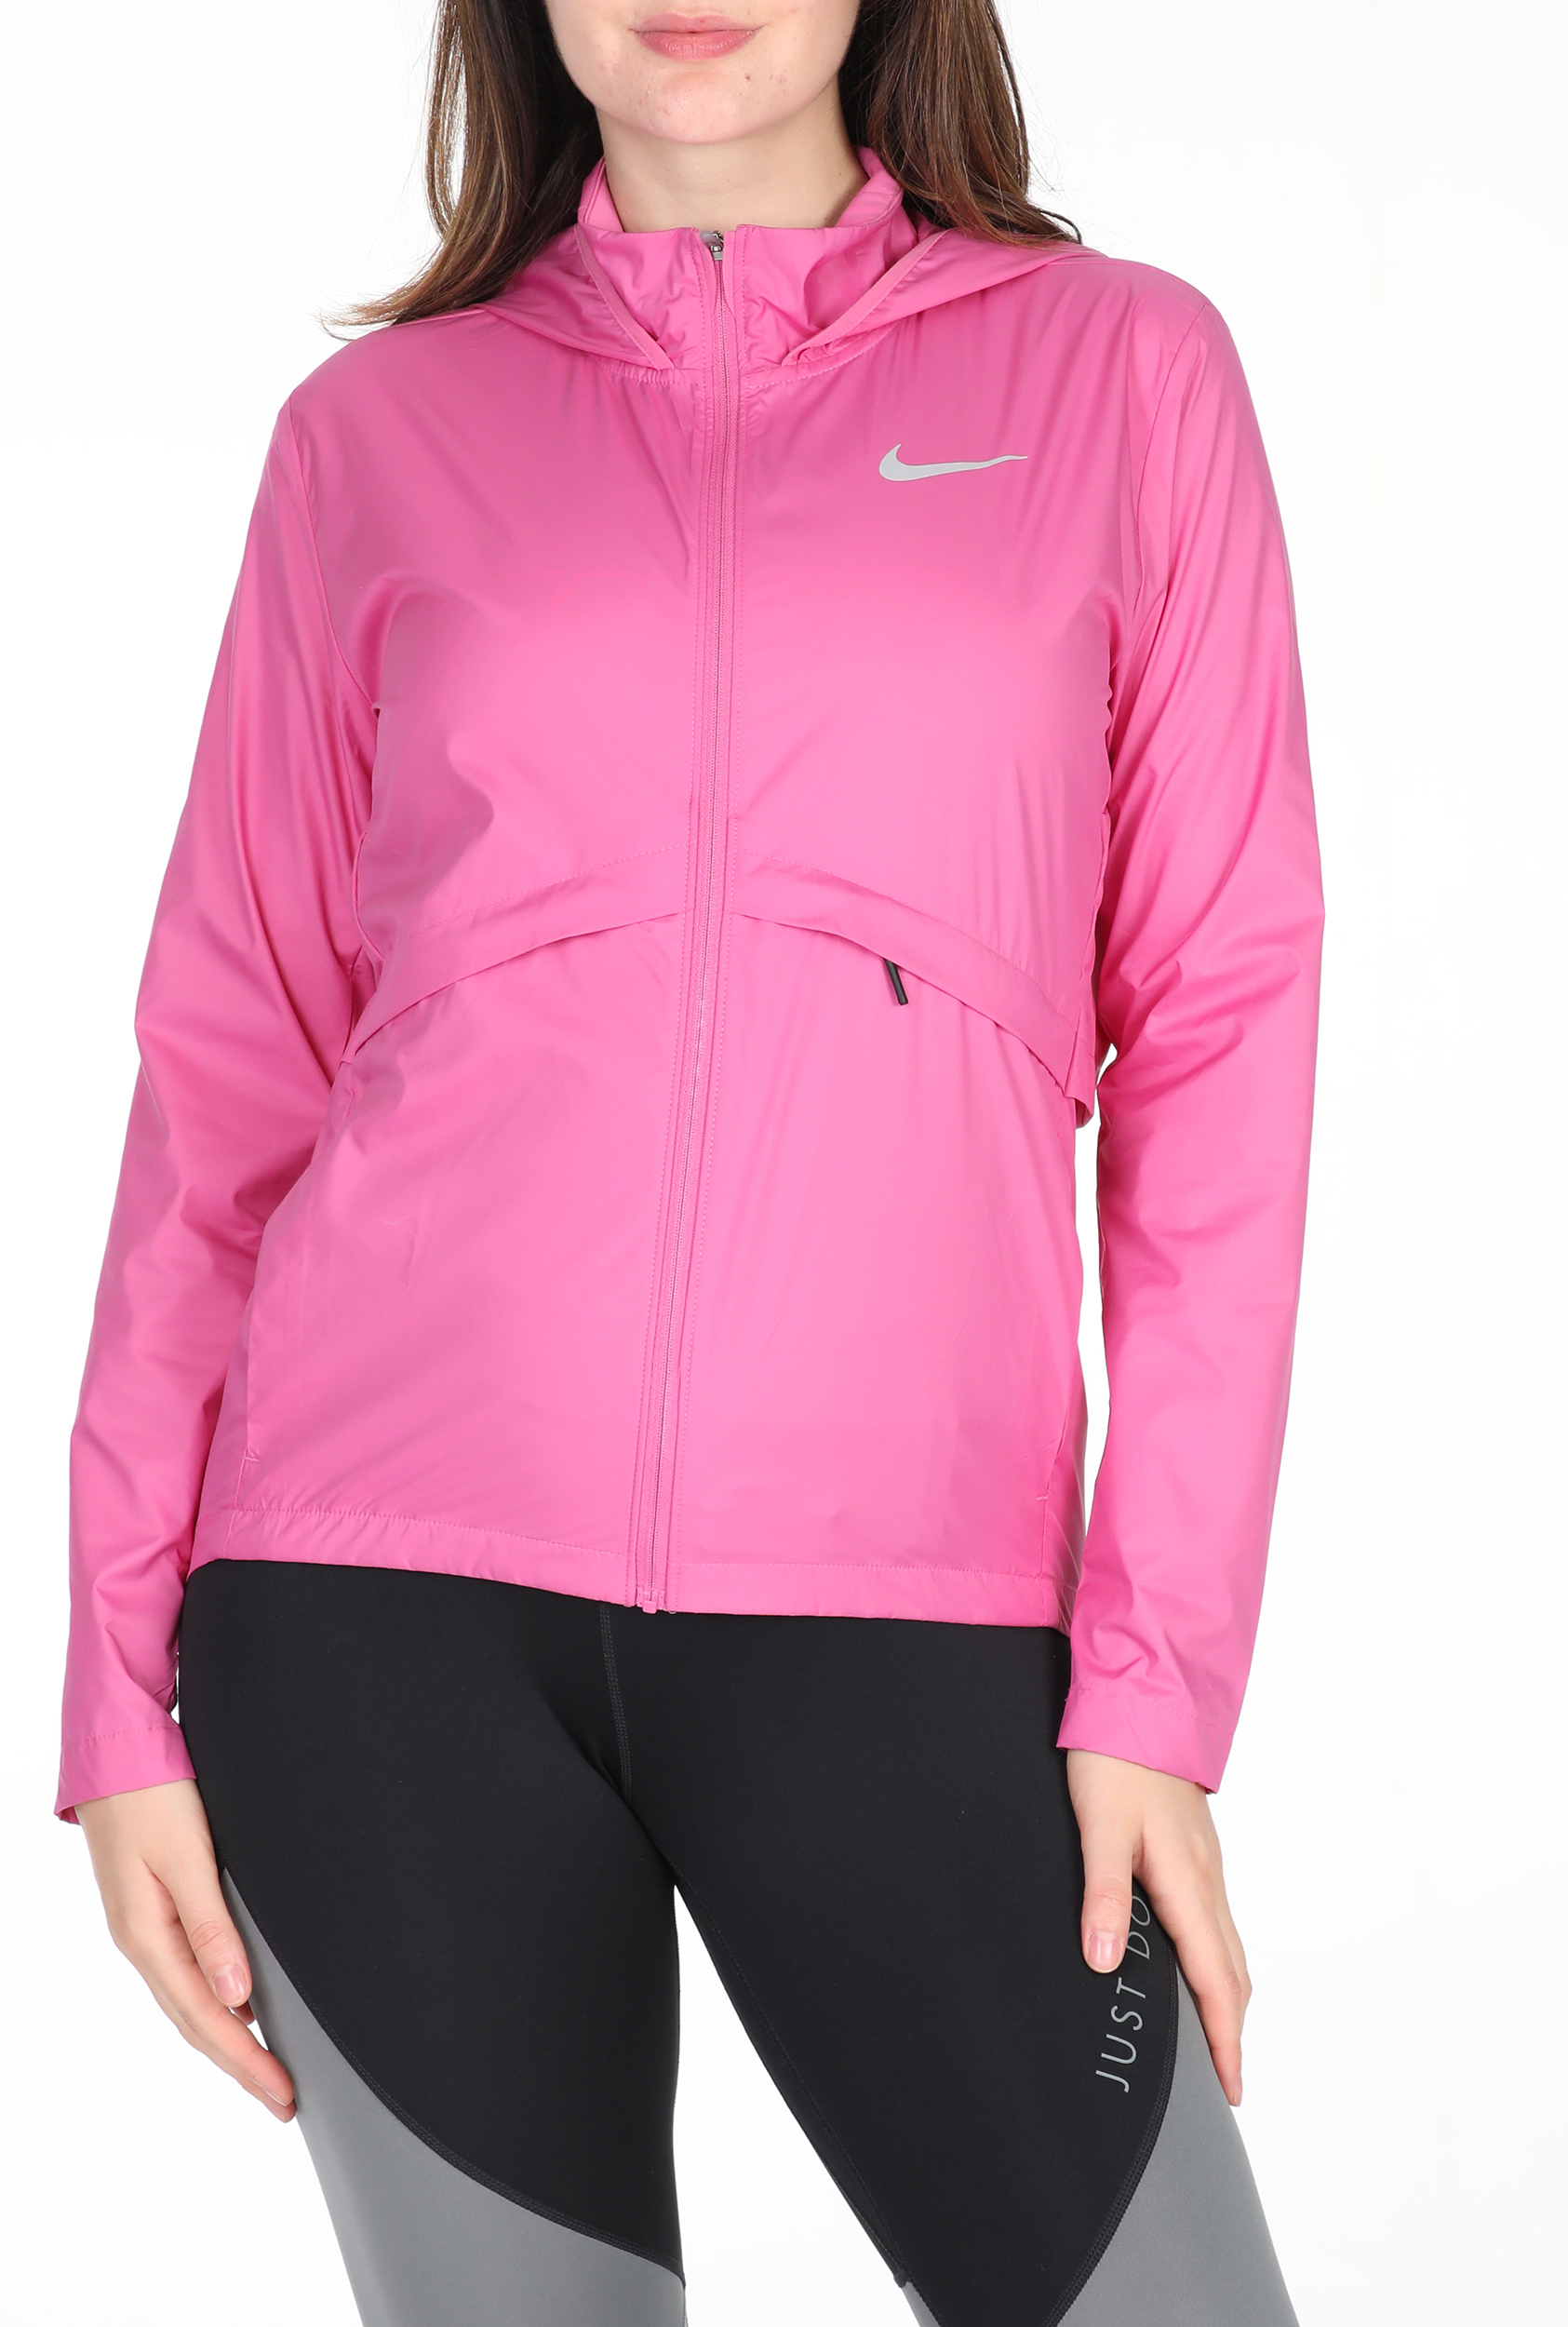 Γυναικεία/Ρούχα/Πανωφόρια/Τζάκετς NIKE - Γυναικείο αντιανεμικό jacket NIKE ESSNTL JKT HD ροζ